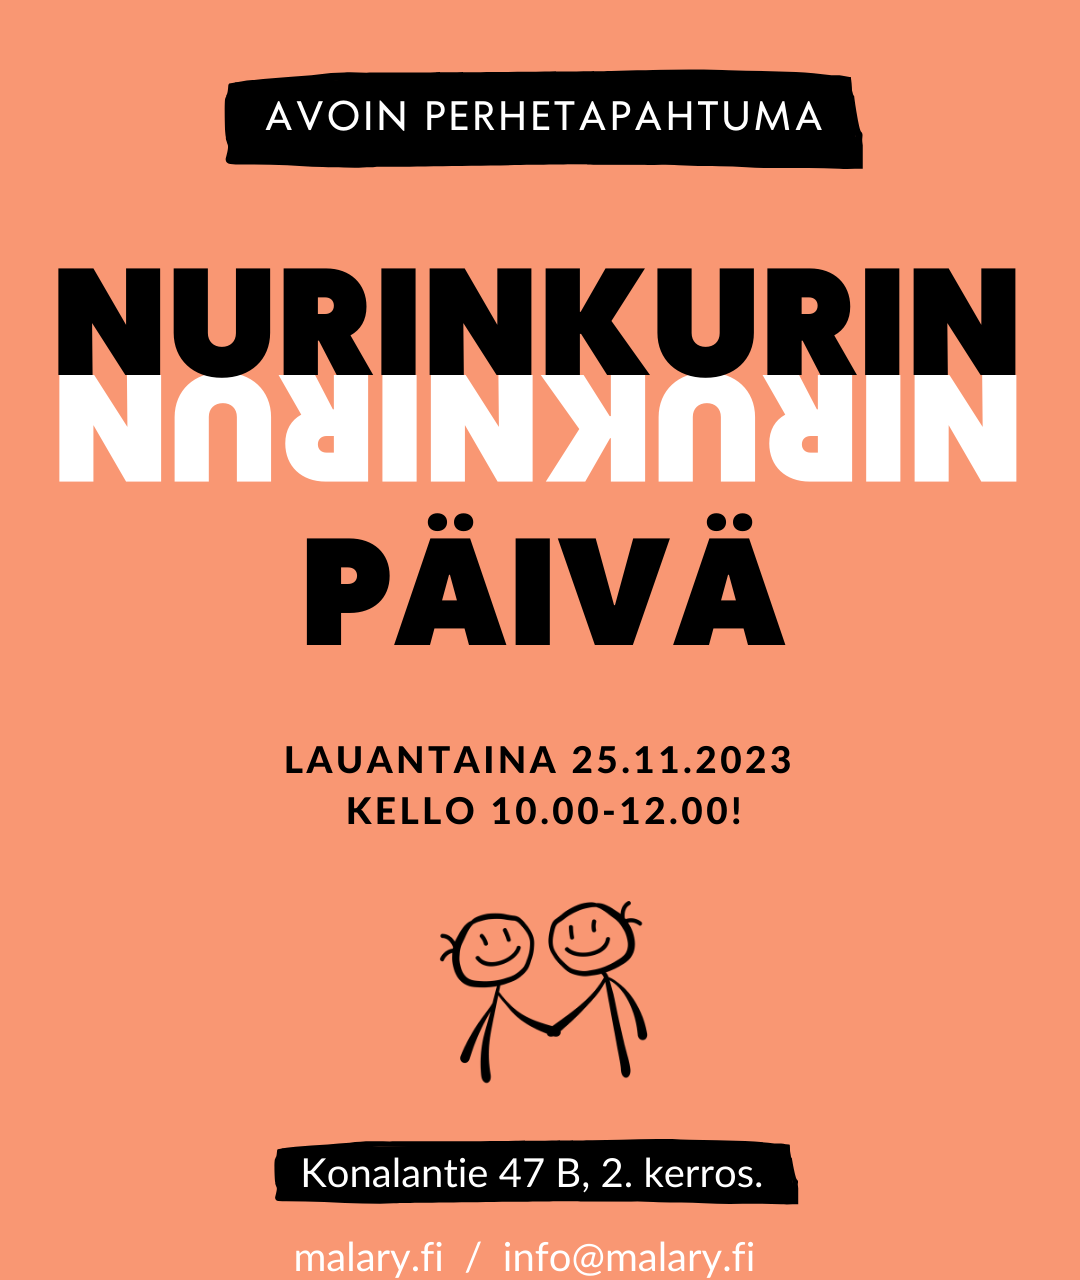 Ilmoitus avoimesta perhetapahtumasta Nurinkurin-päivästä 25.11.2023